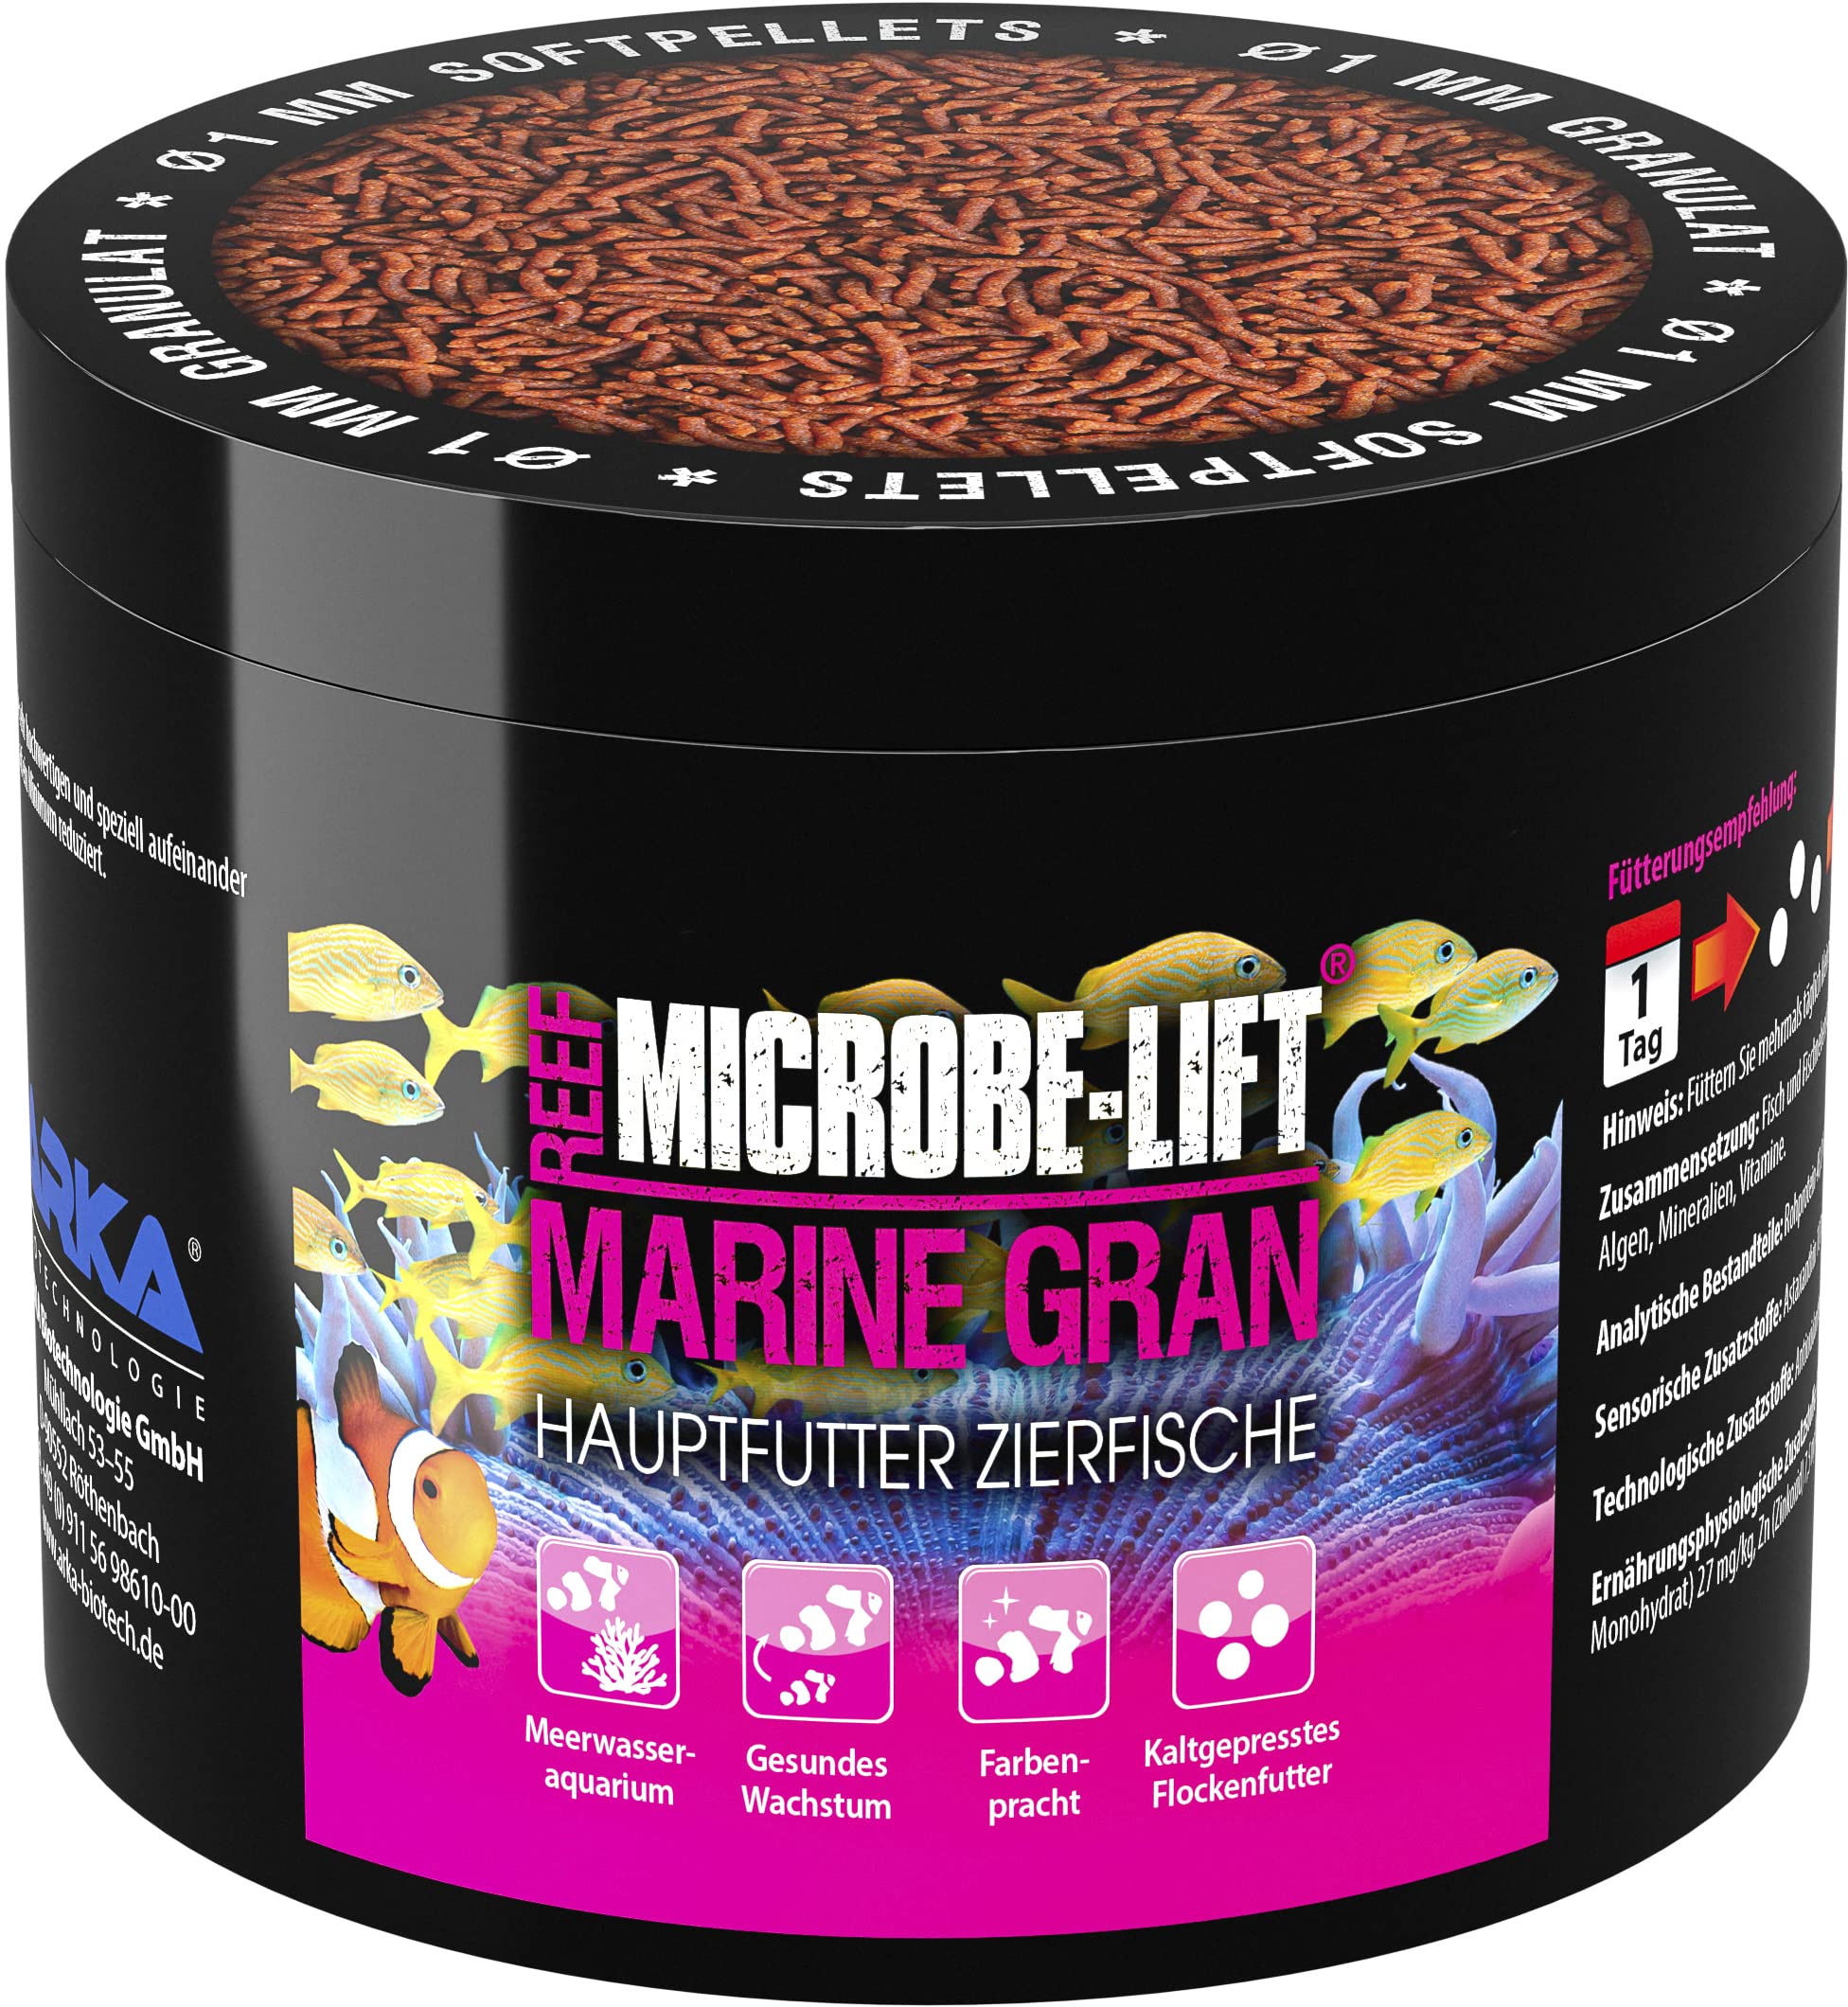 MICROBE-LIFT Marine Gran - 500 ml - Hochwertiges Soft Granulat Fischfutter, fördert Farbenpracht und Wachstum von Meerwasser-Fischen, kaltgepresst.